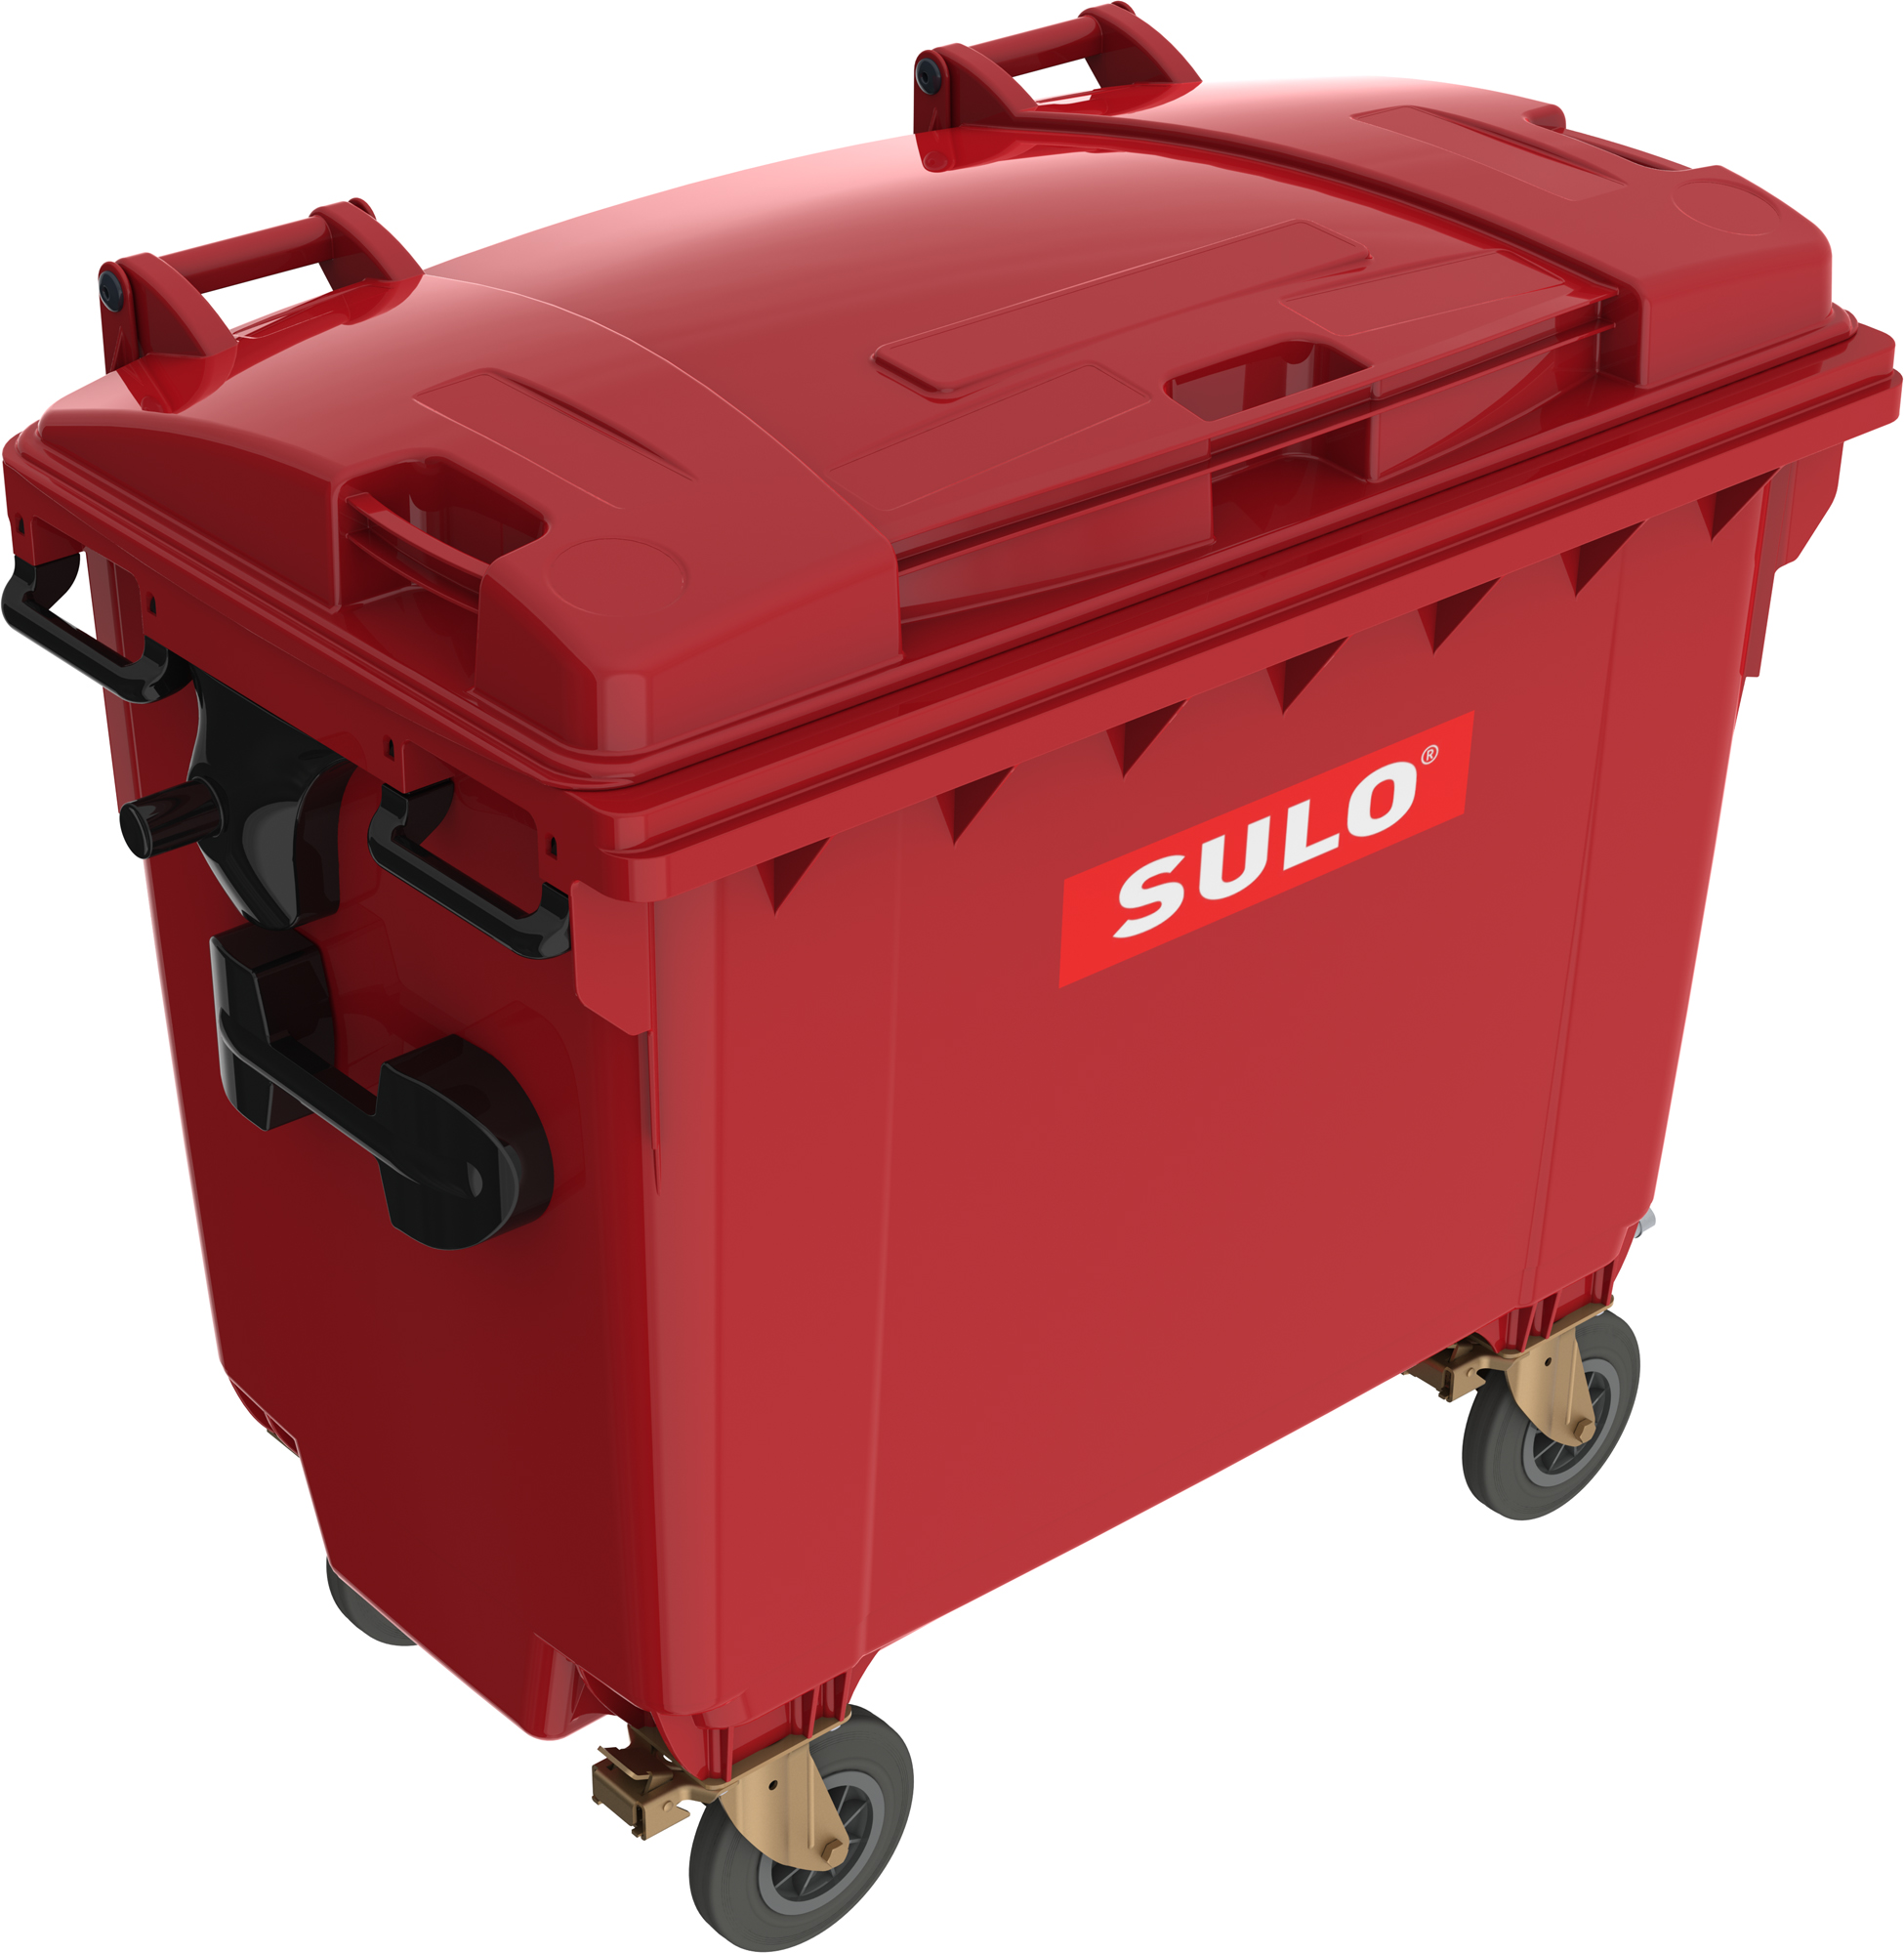 Eurocontainer plastic 660 L rosu capac plat SULO – Transport Inclus 660